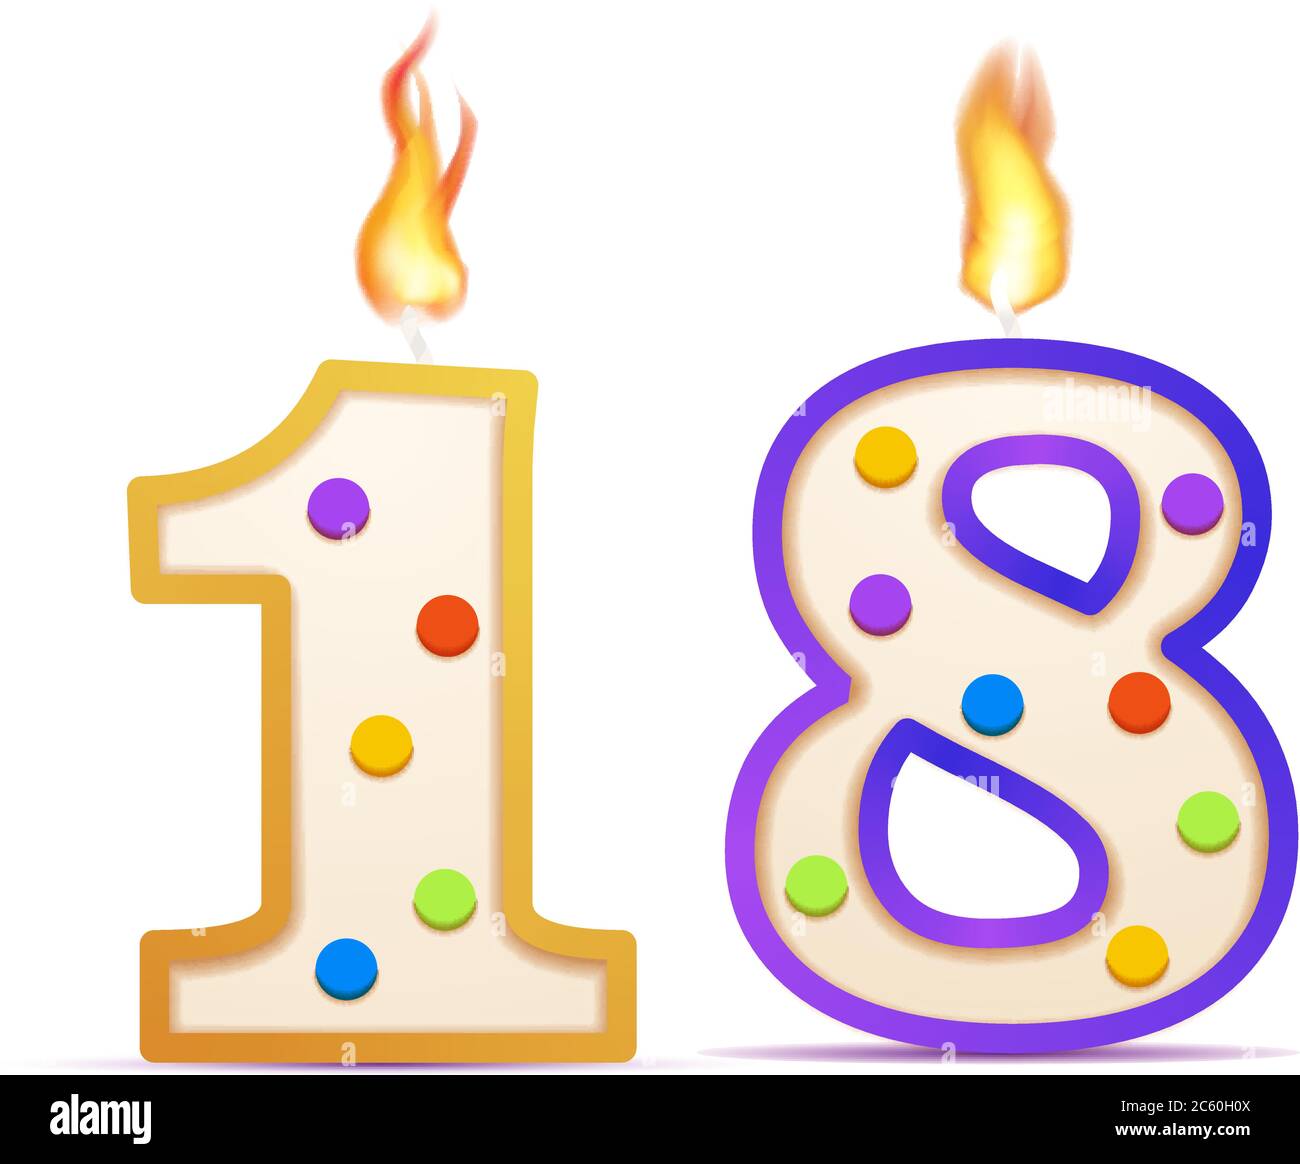 Dieciocho años de aniversario, 18 velas de cumpleaños en forma de